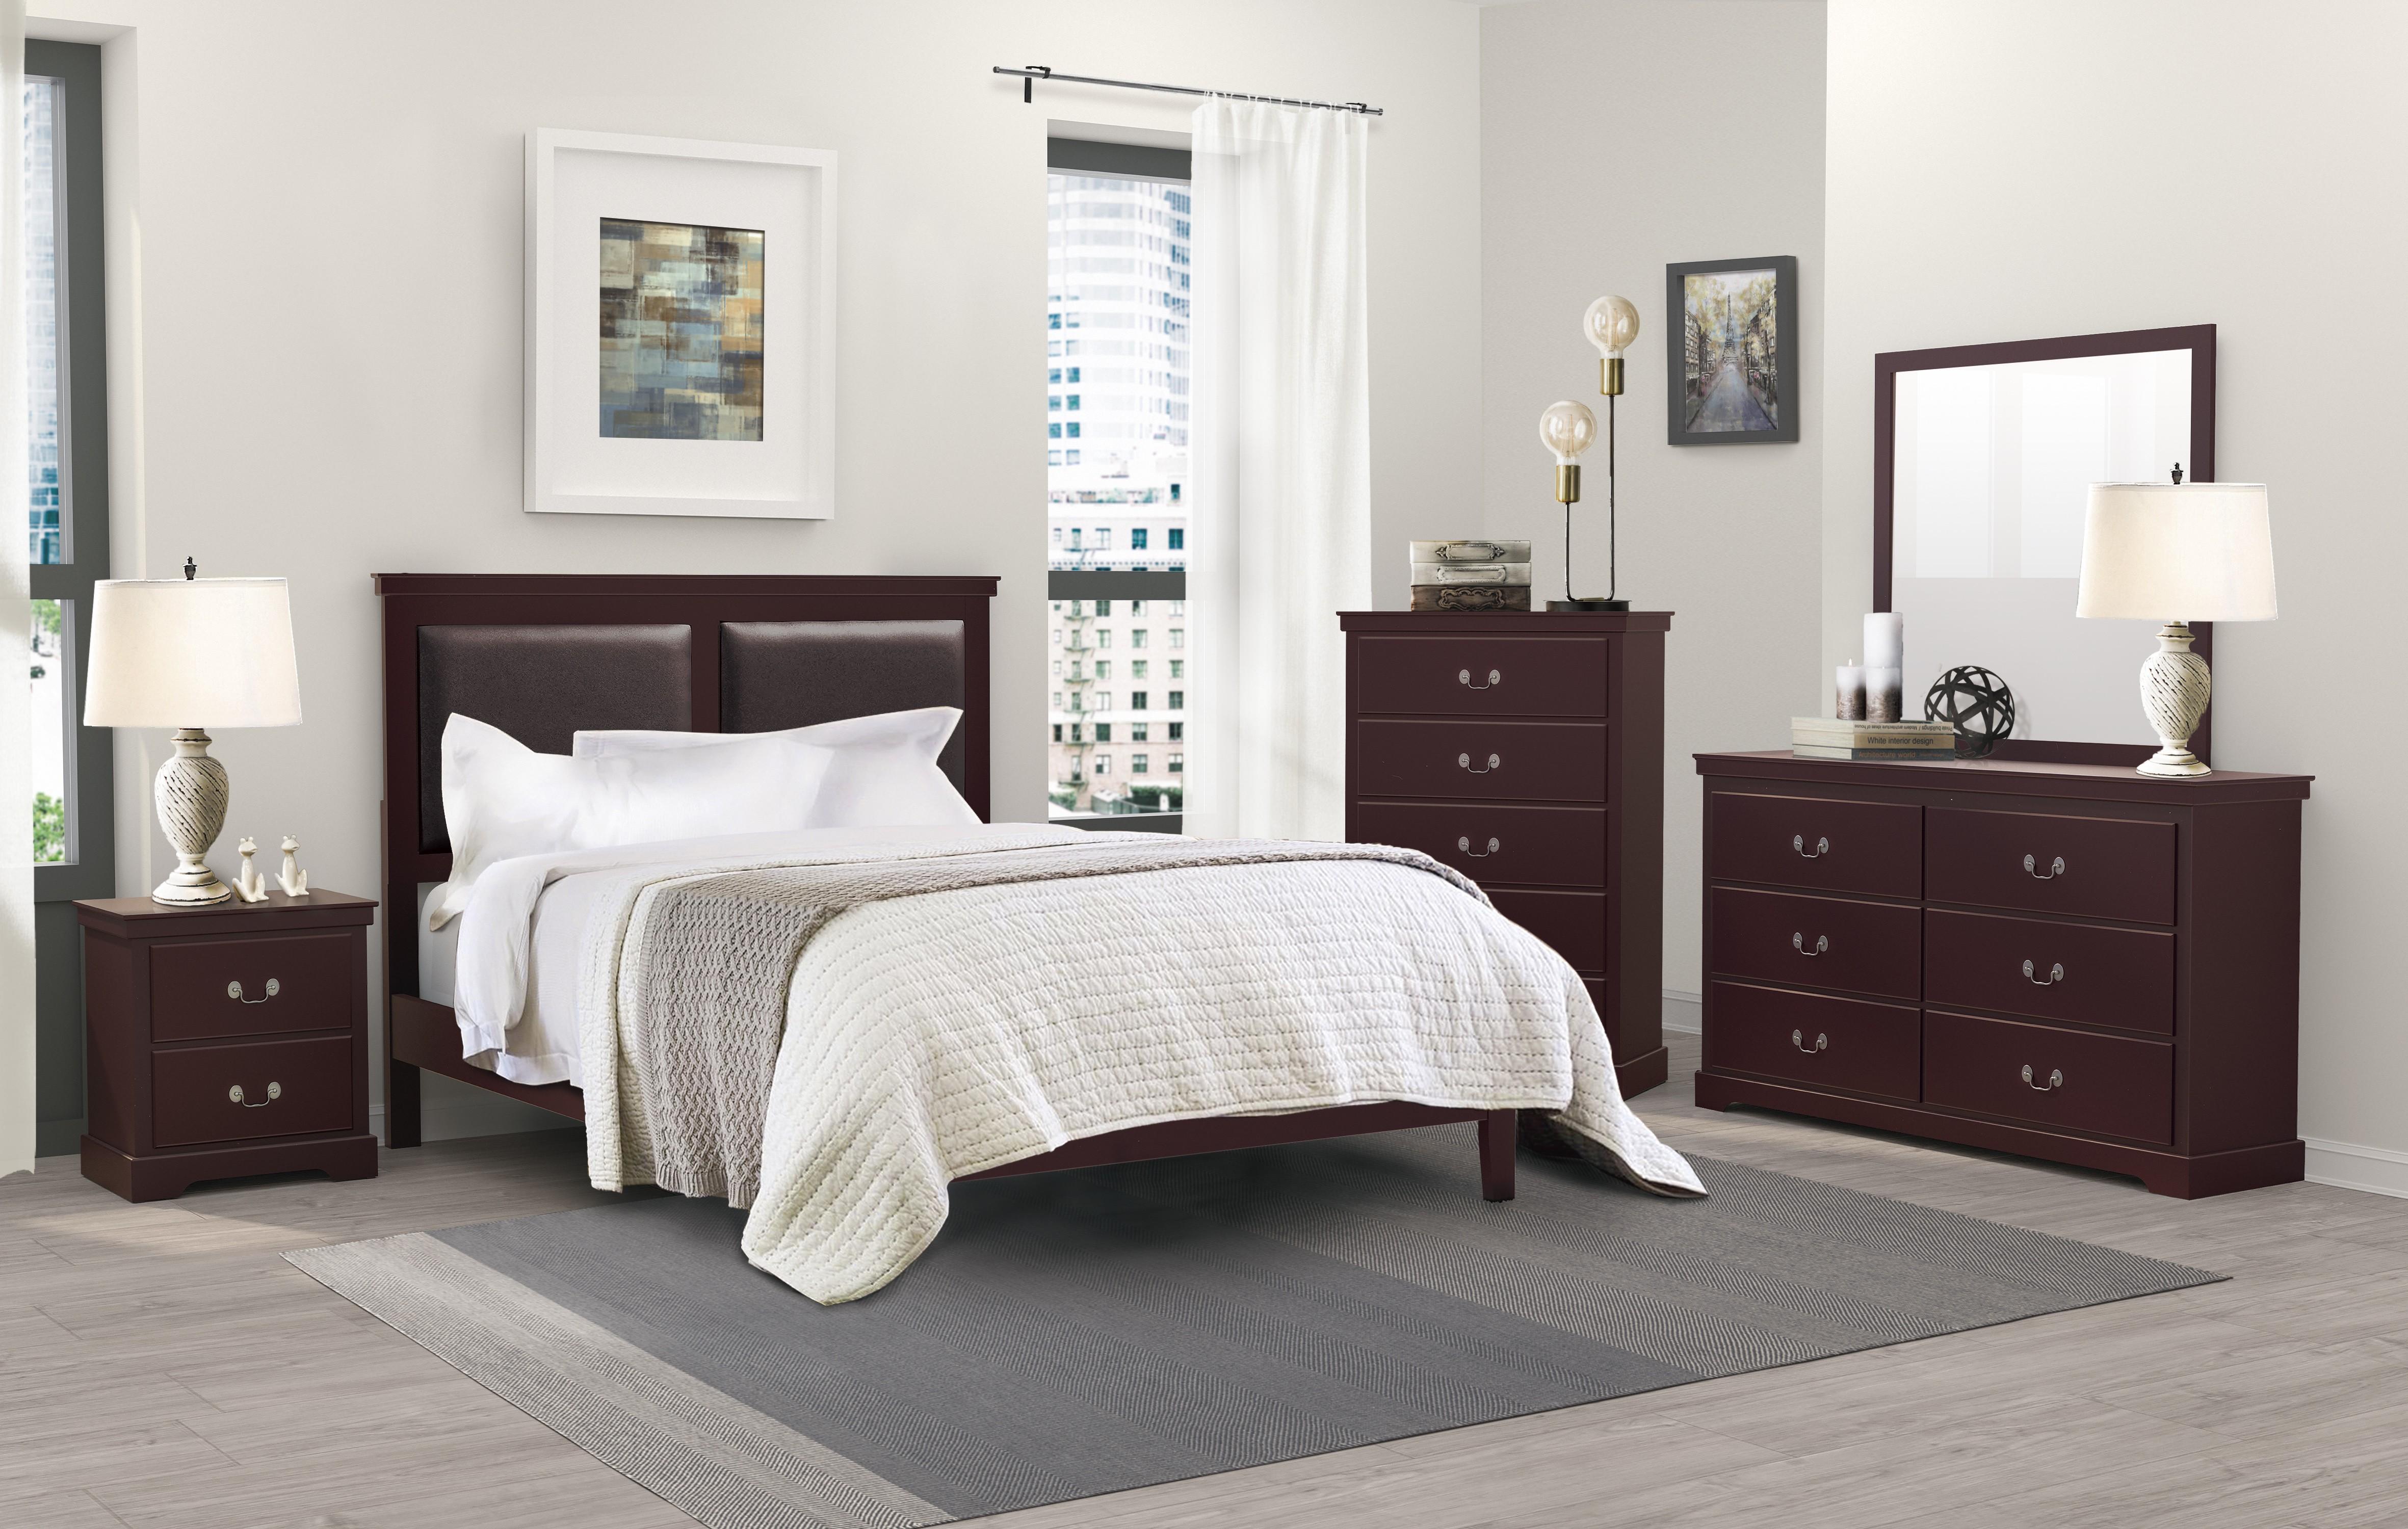 

                    
Buy Modern Cherry Wood King Bedroom Set 3pcs Homelegance 1519CHK-1EK* Seabright
